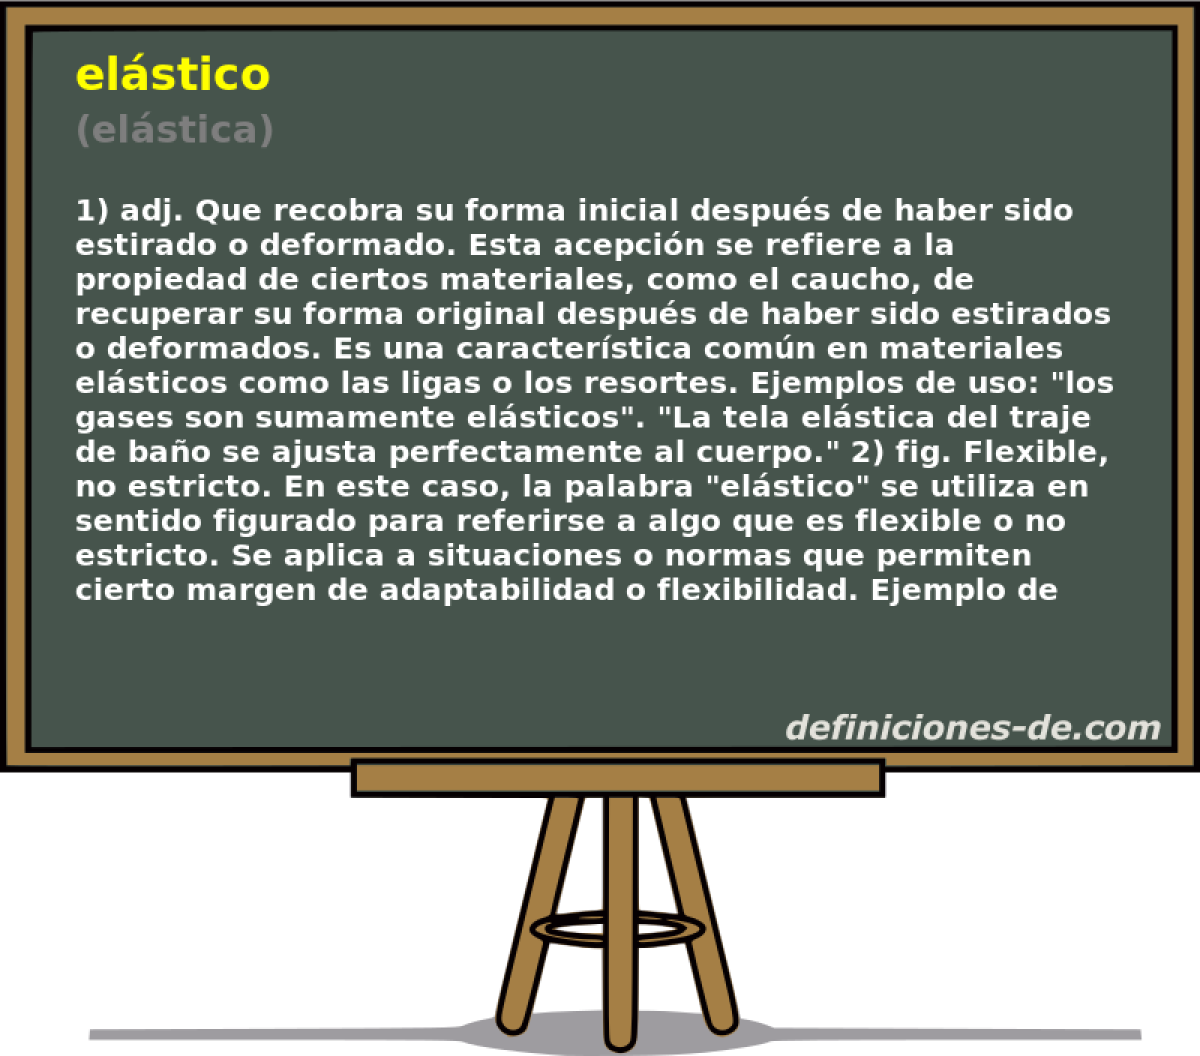 elstico (elstica)